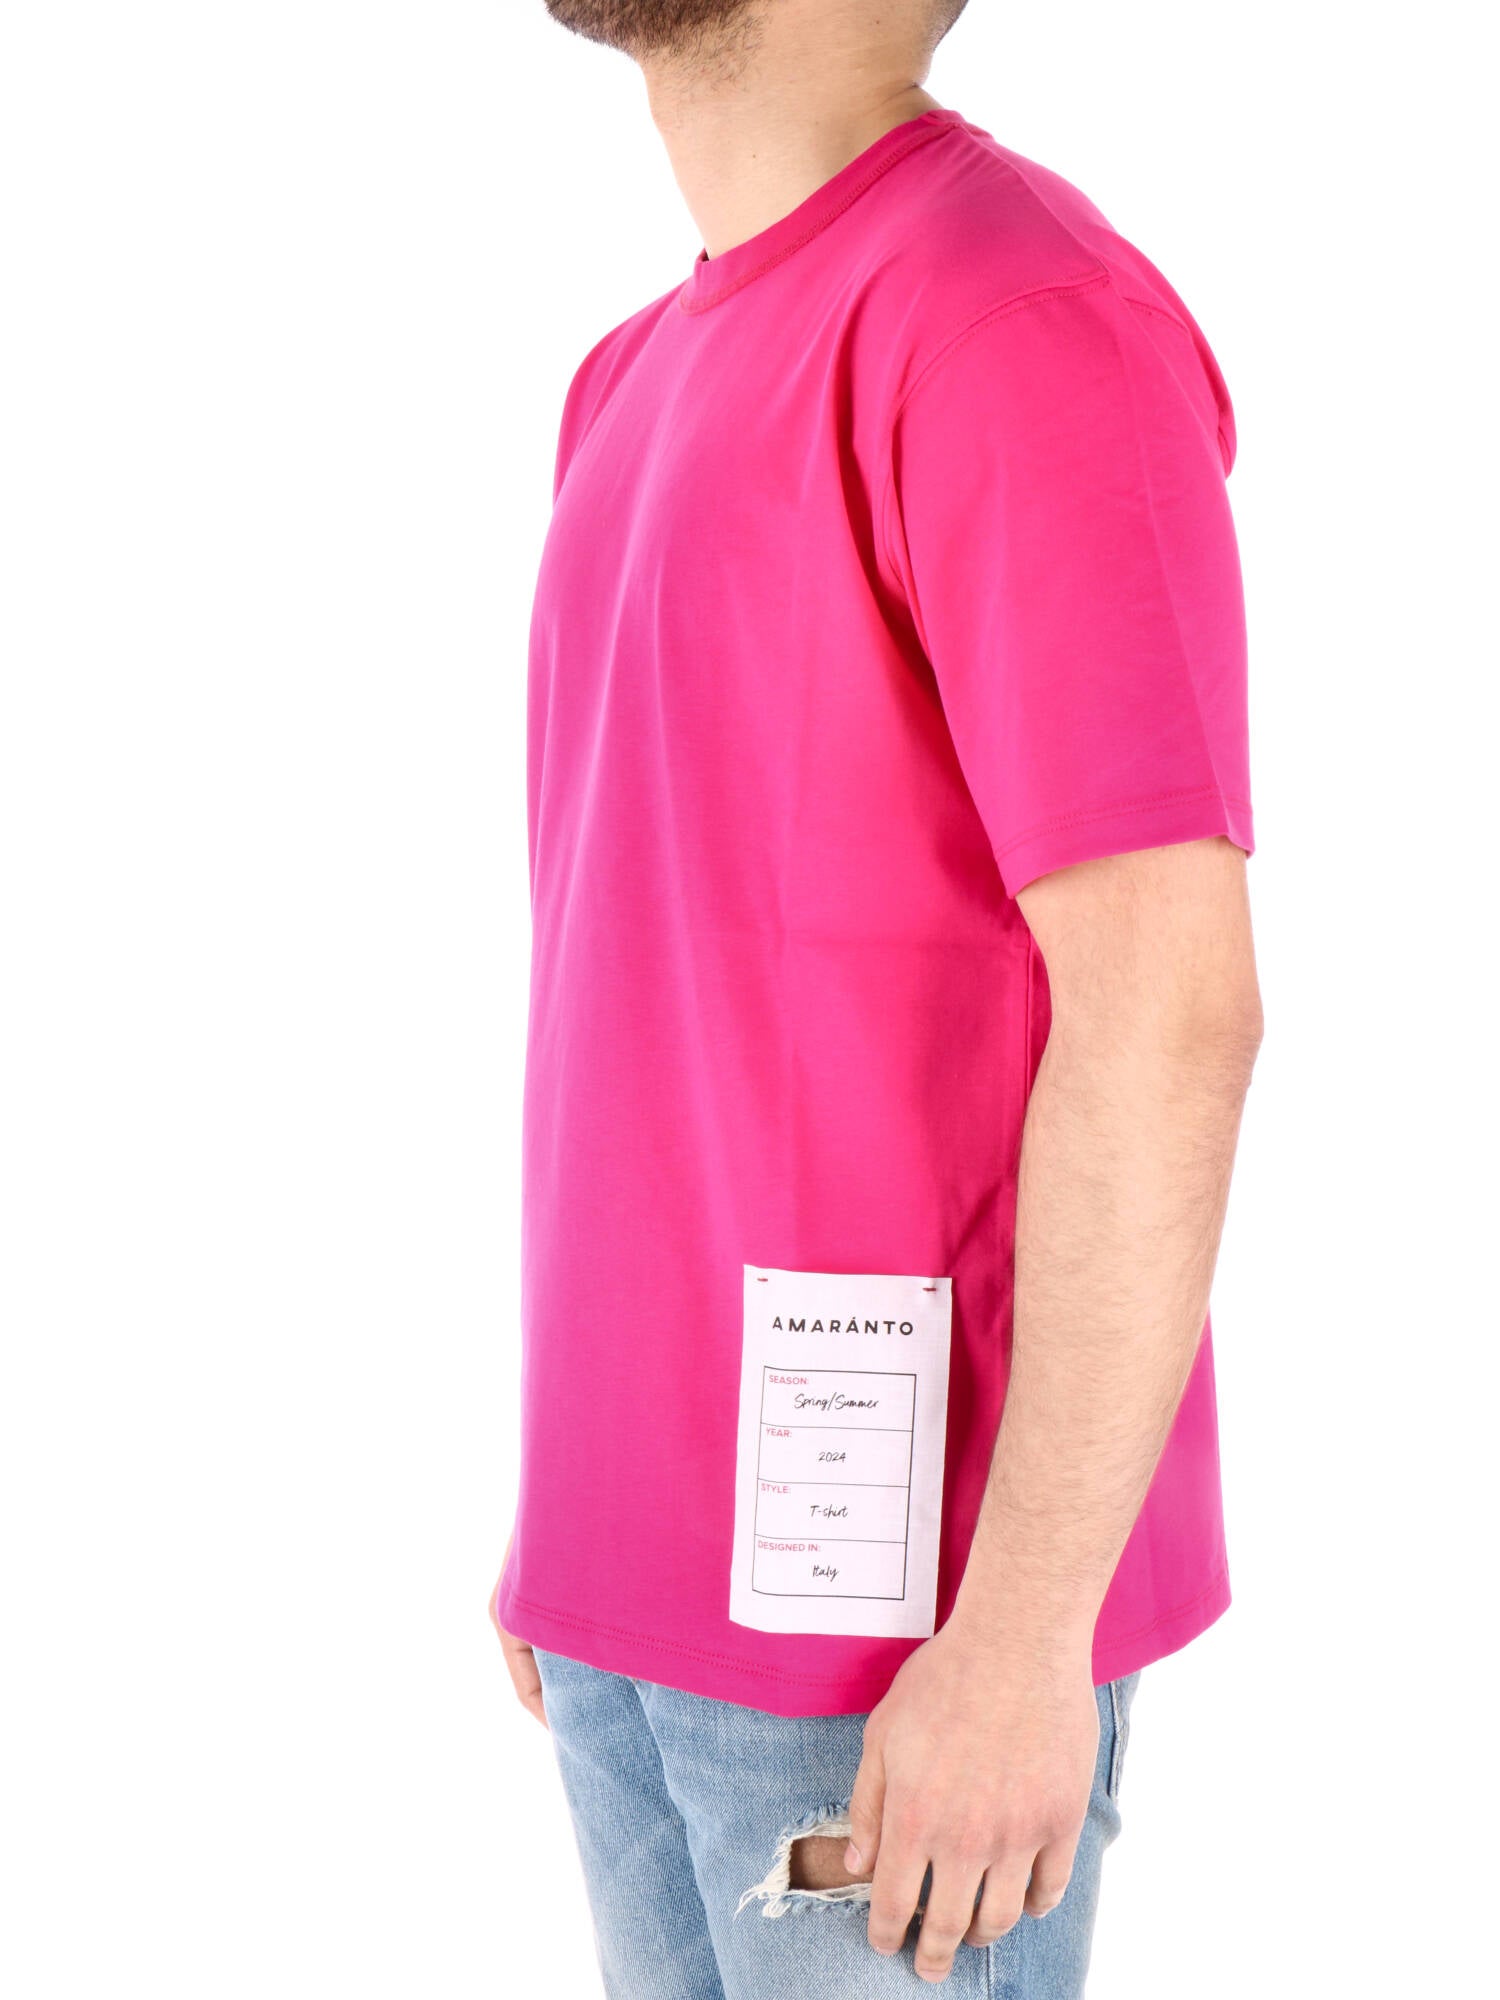 Amaranto t-shirt over magenta